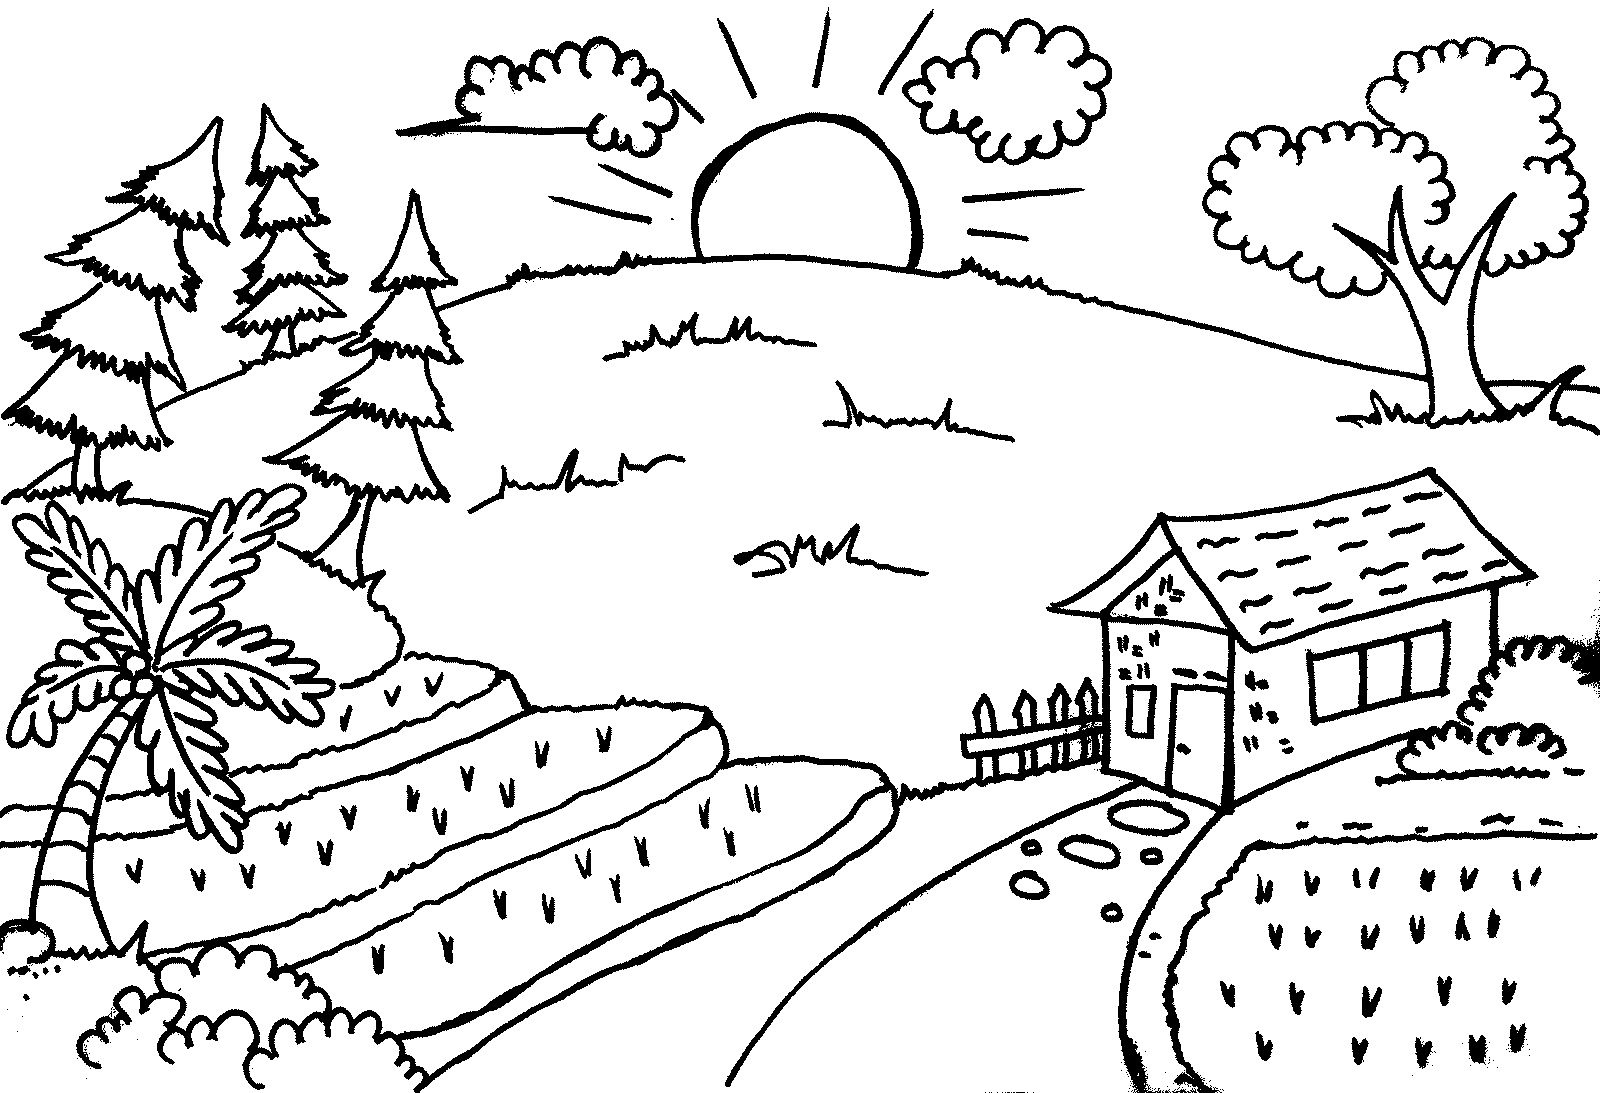  Gambar  Sketsa Untuk Mewarnai Anak SD  kelas  3 enolink